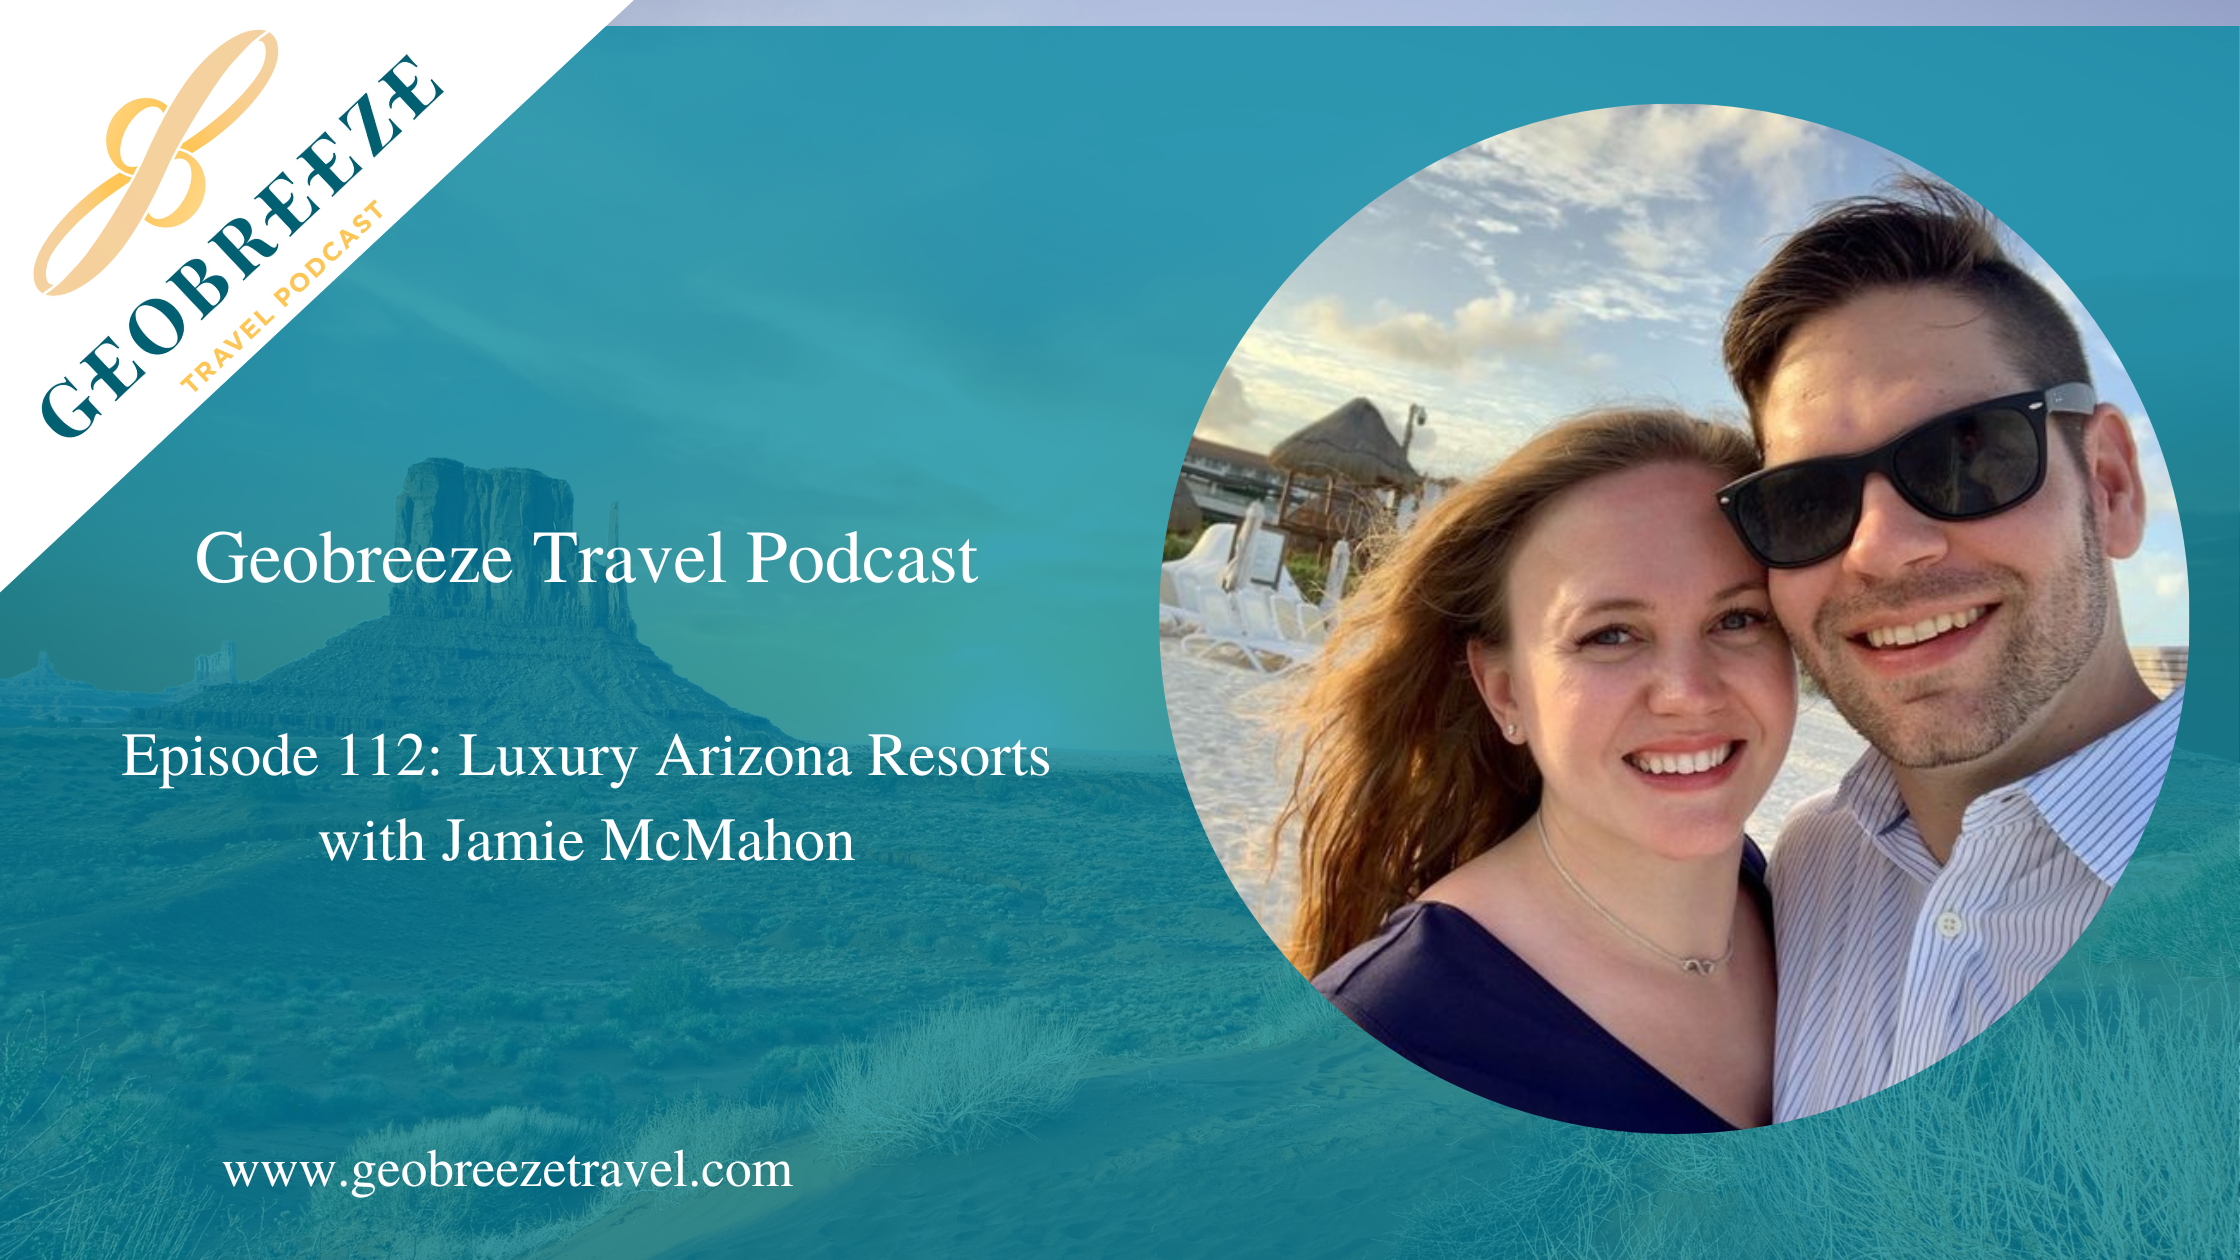 Episode 112: Luxury Arizona Resorts with Jamie McMahon